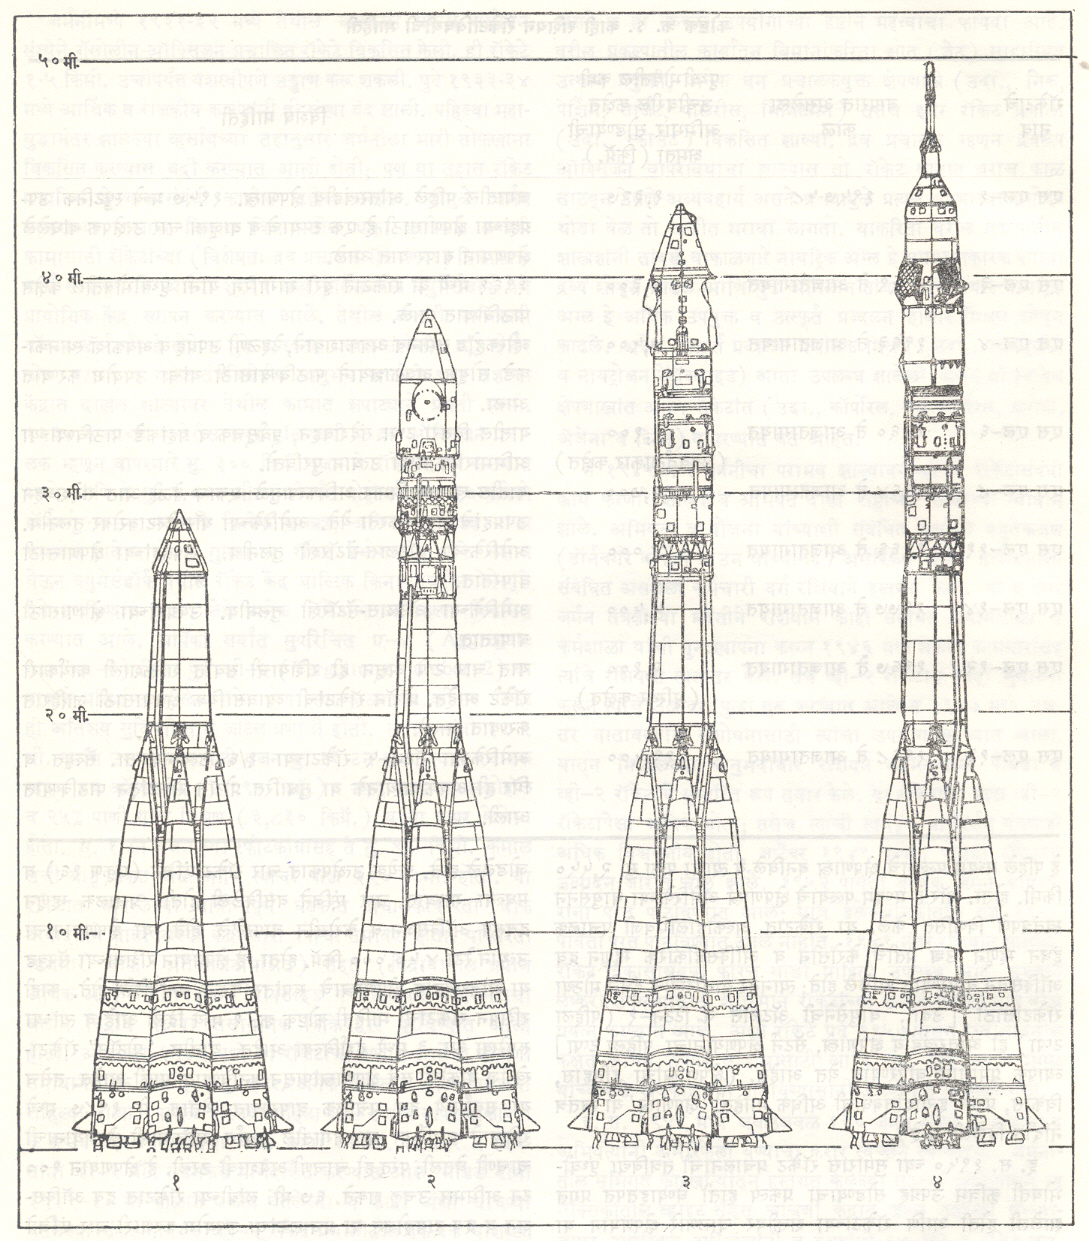 आ. ३. (१) काही रशियन रॉकेटांच्या रुपरेखा (डाव्या बाजूचे आकडे रॉकेटांची उंची मीटरमध्ये दर्शवितात) : (१) एस एल−१ (एक टप्प्याचे रॉकेट), (२) एस एल−३ (व्होस्टोक अवकाशयानासह), (३) एस एल−४ (व्होस्कहोड अवकाशयानासह), (४) एस एल−४ (सोयूझ अवकाशयानासह).